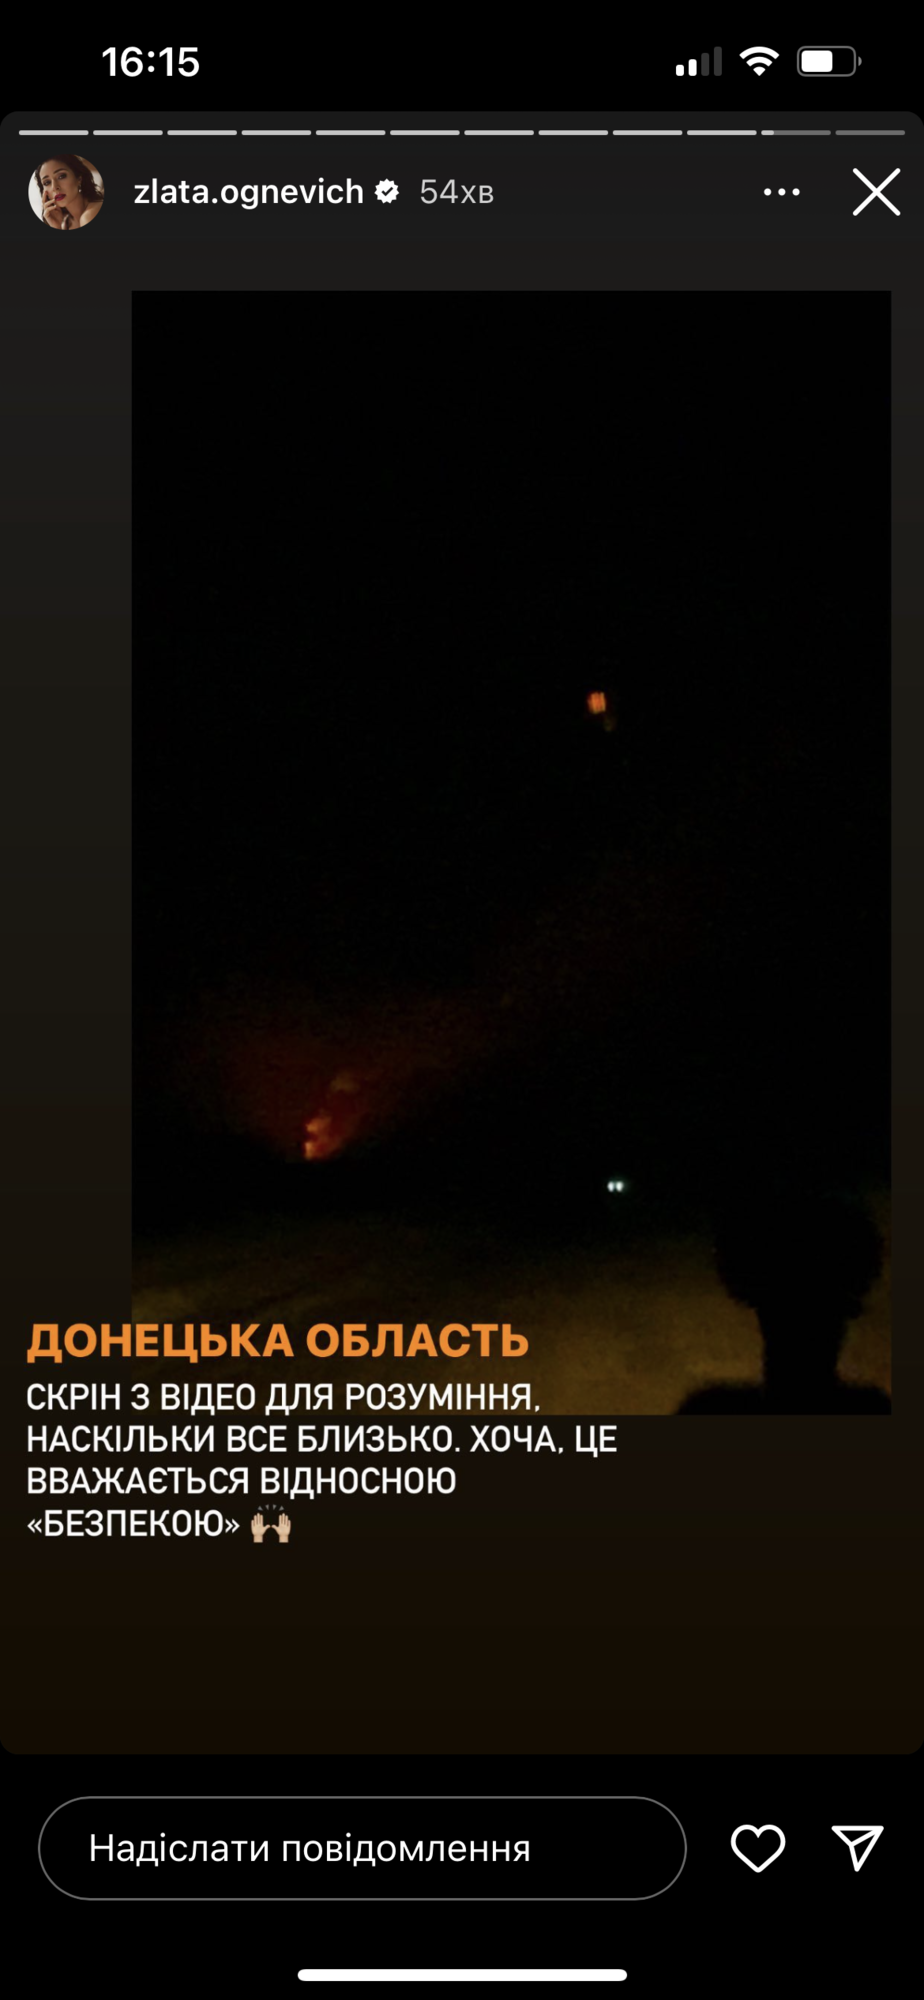 "Разорванные снаряды, взрывы": Огневич побывала в Донецкой области, где впервые в жизни увидела работу артиллерии. Фото